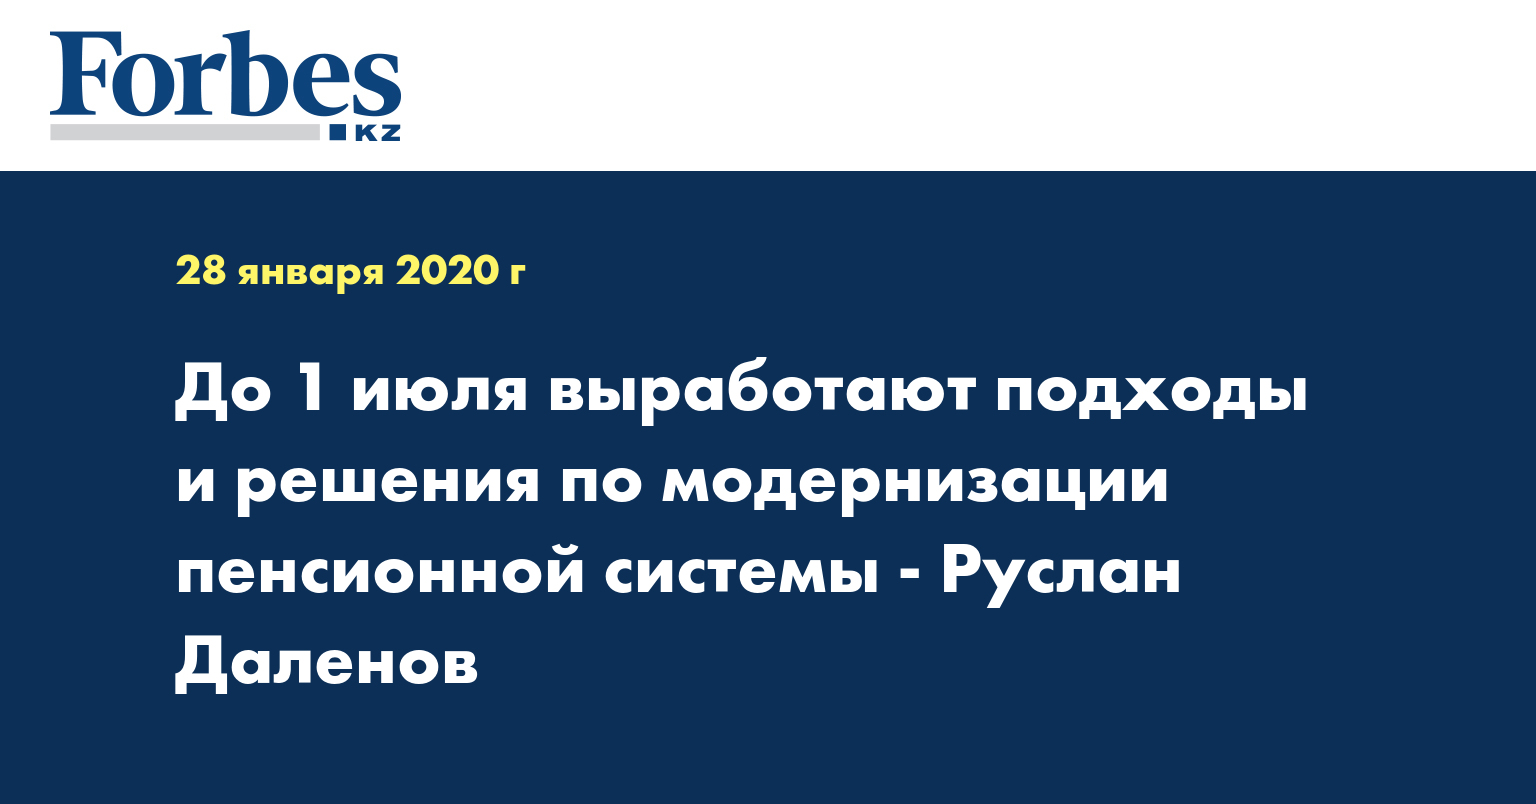 До 1 июля выработают подходы и решения по модернизации пенсионной системы - Руслан Даленов